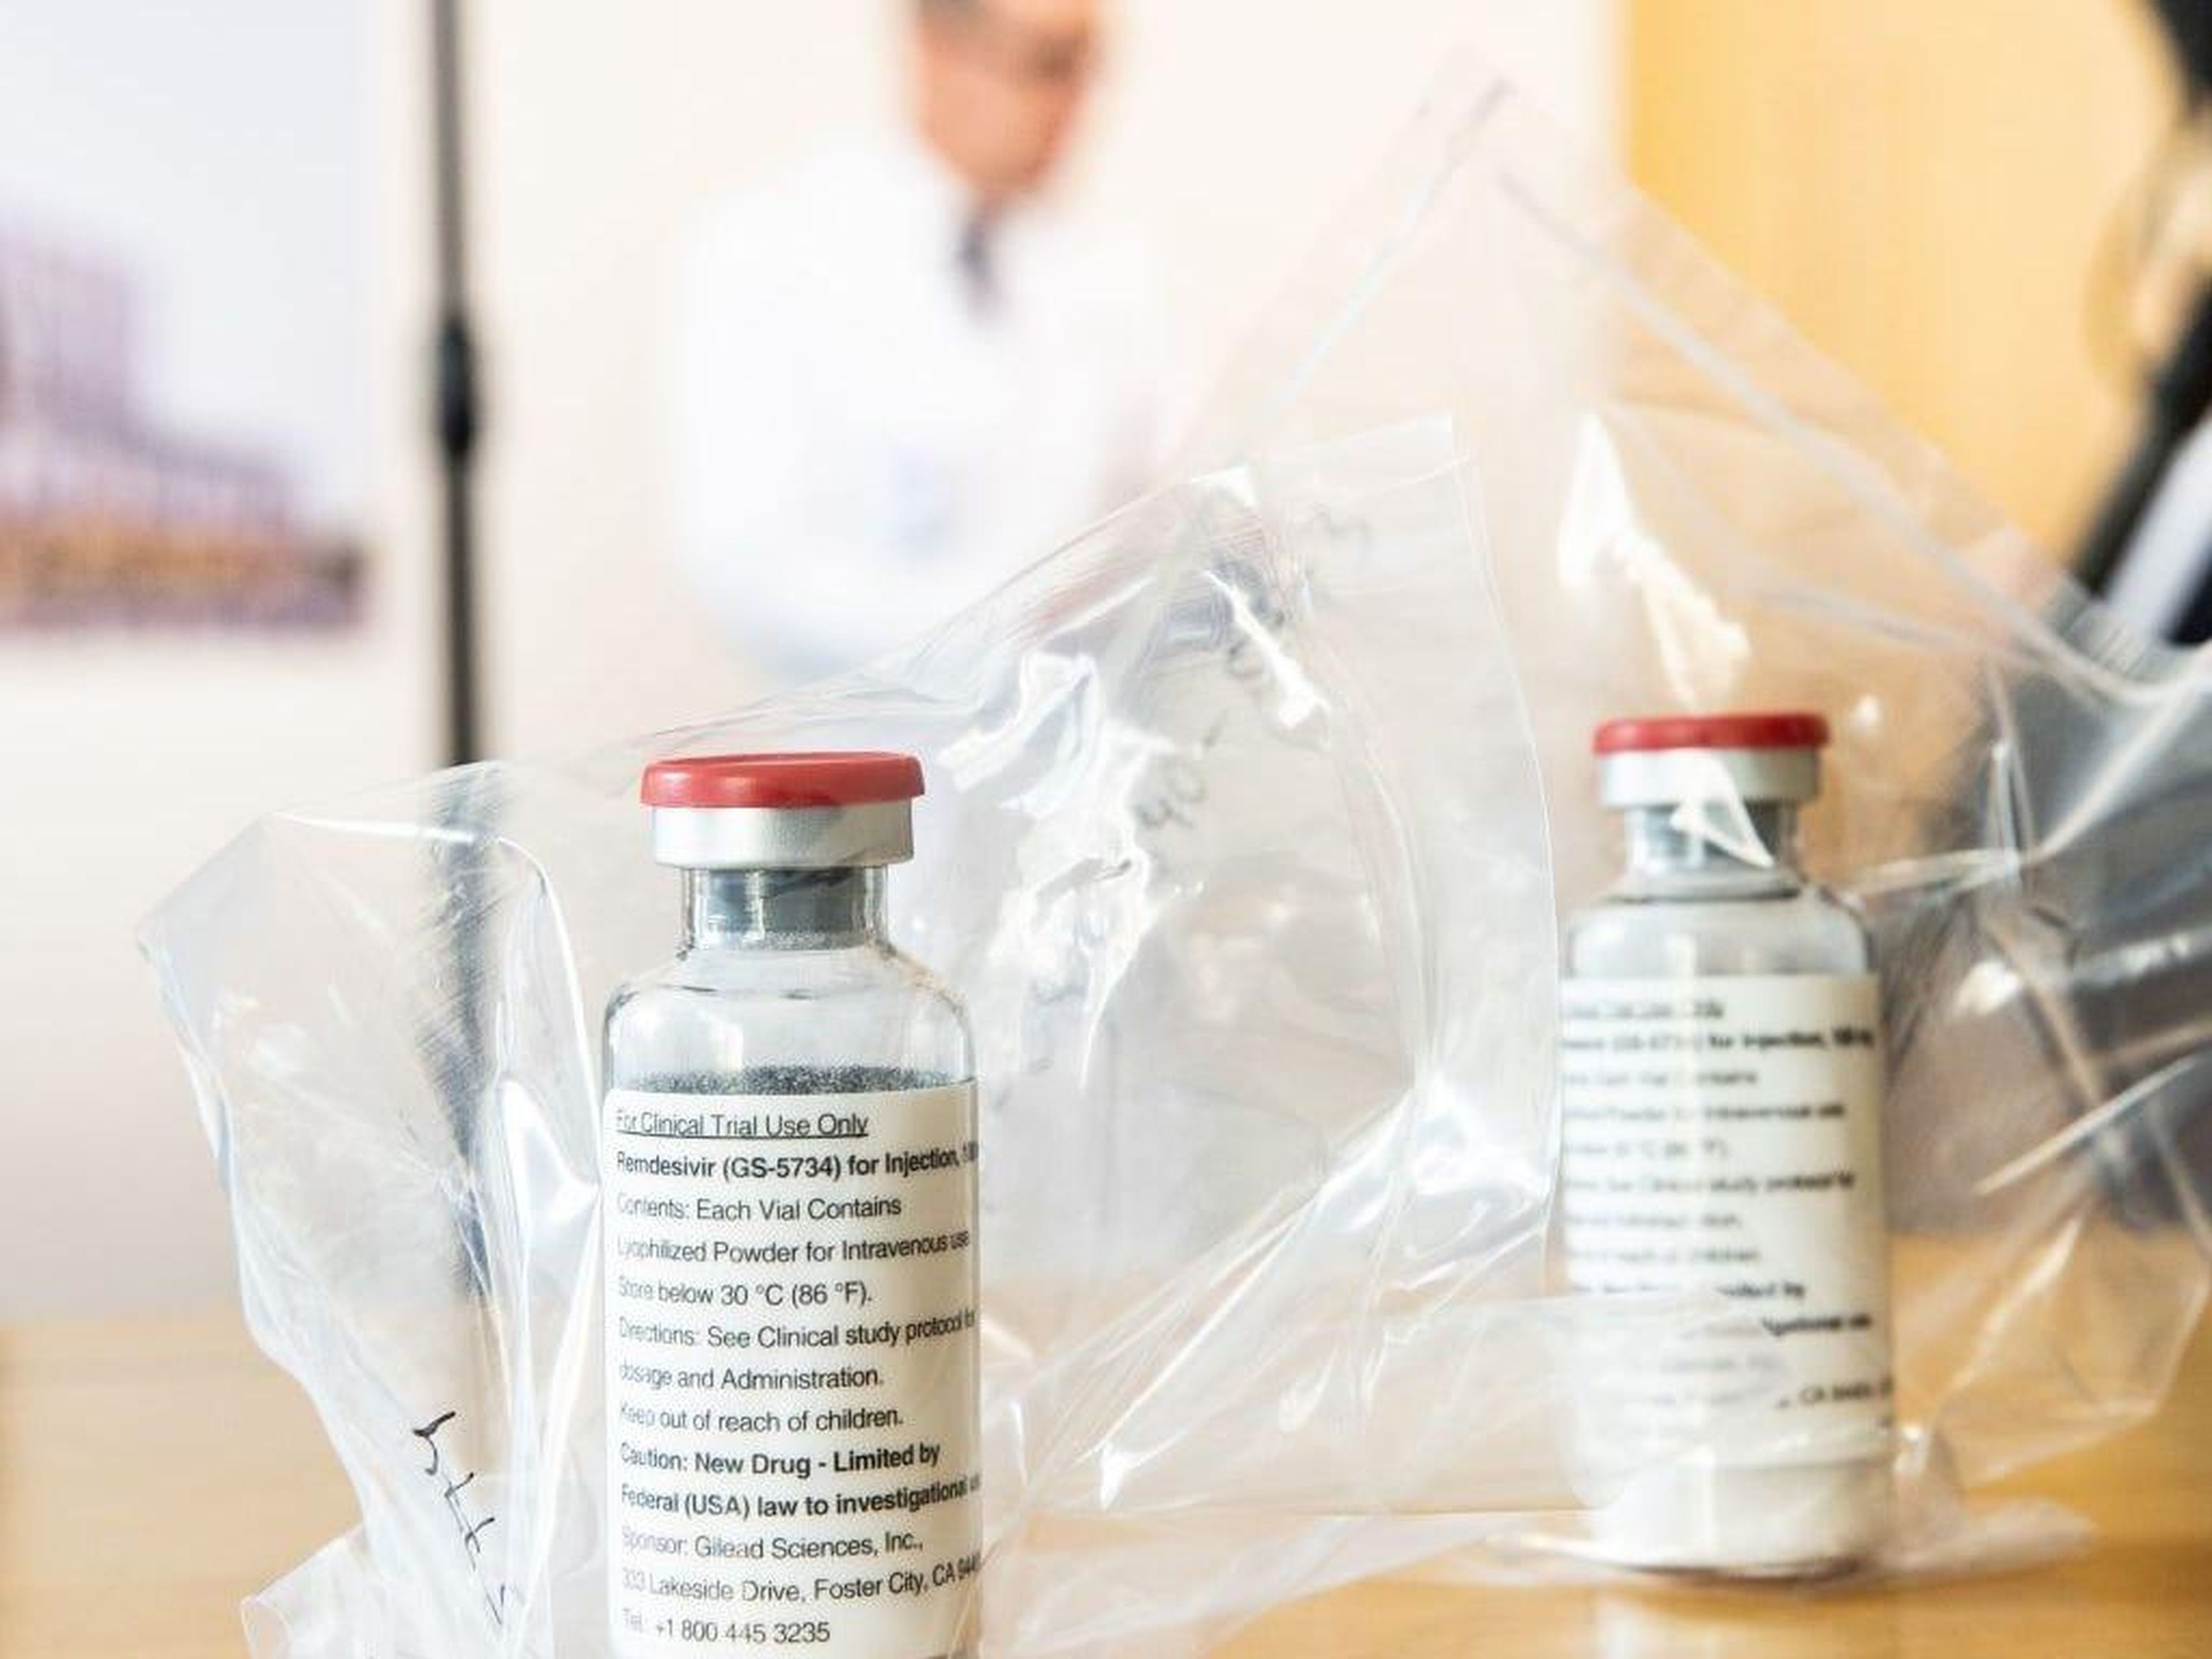 Frascos del medicamento remdesivir visto en el Hospital Universitario Eppendorf de Hamburgo, en el norte de Alemania, el 8 de abril de 2020.